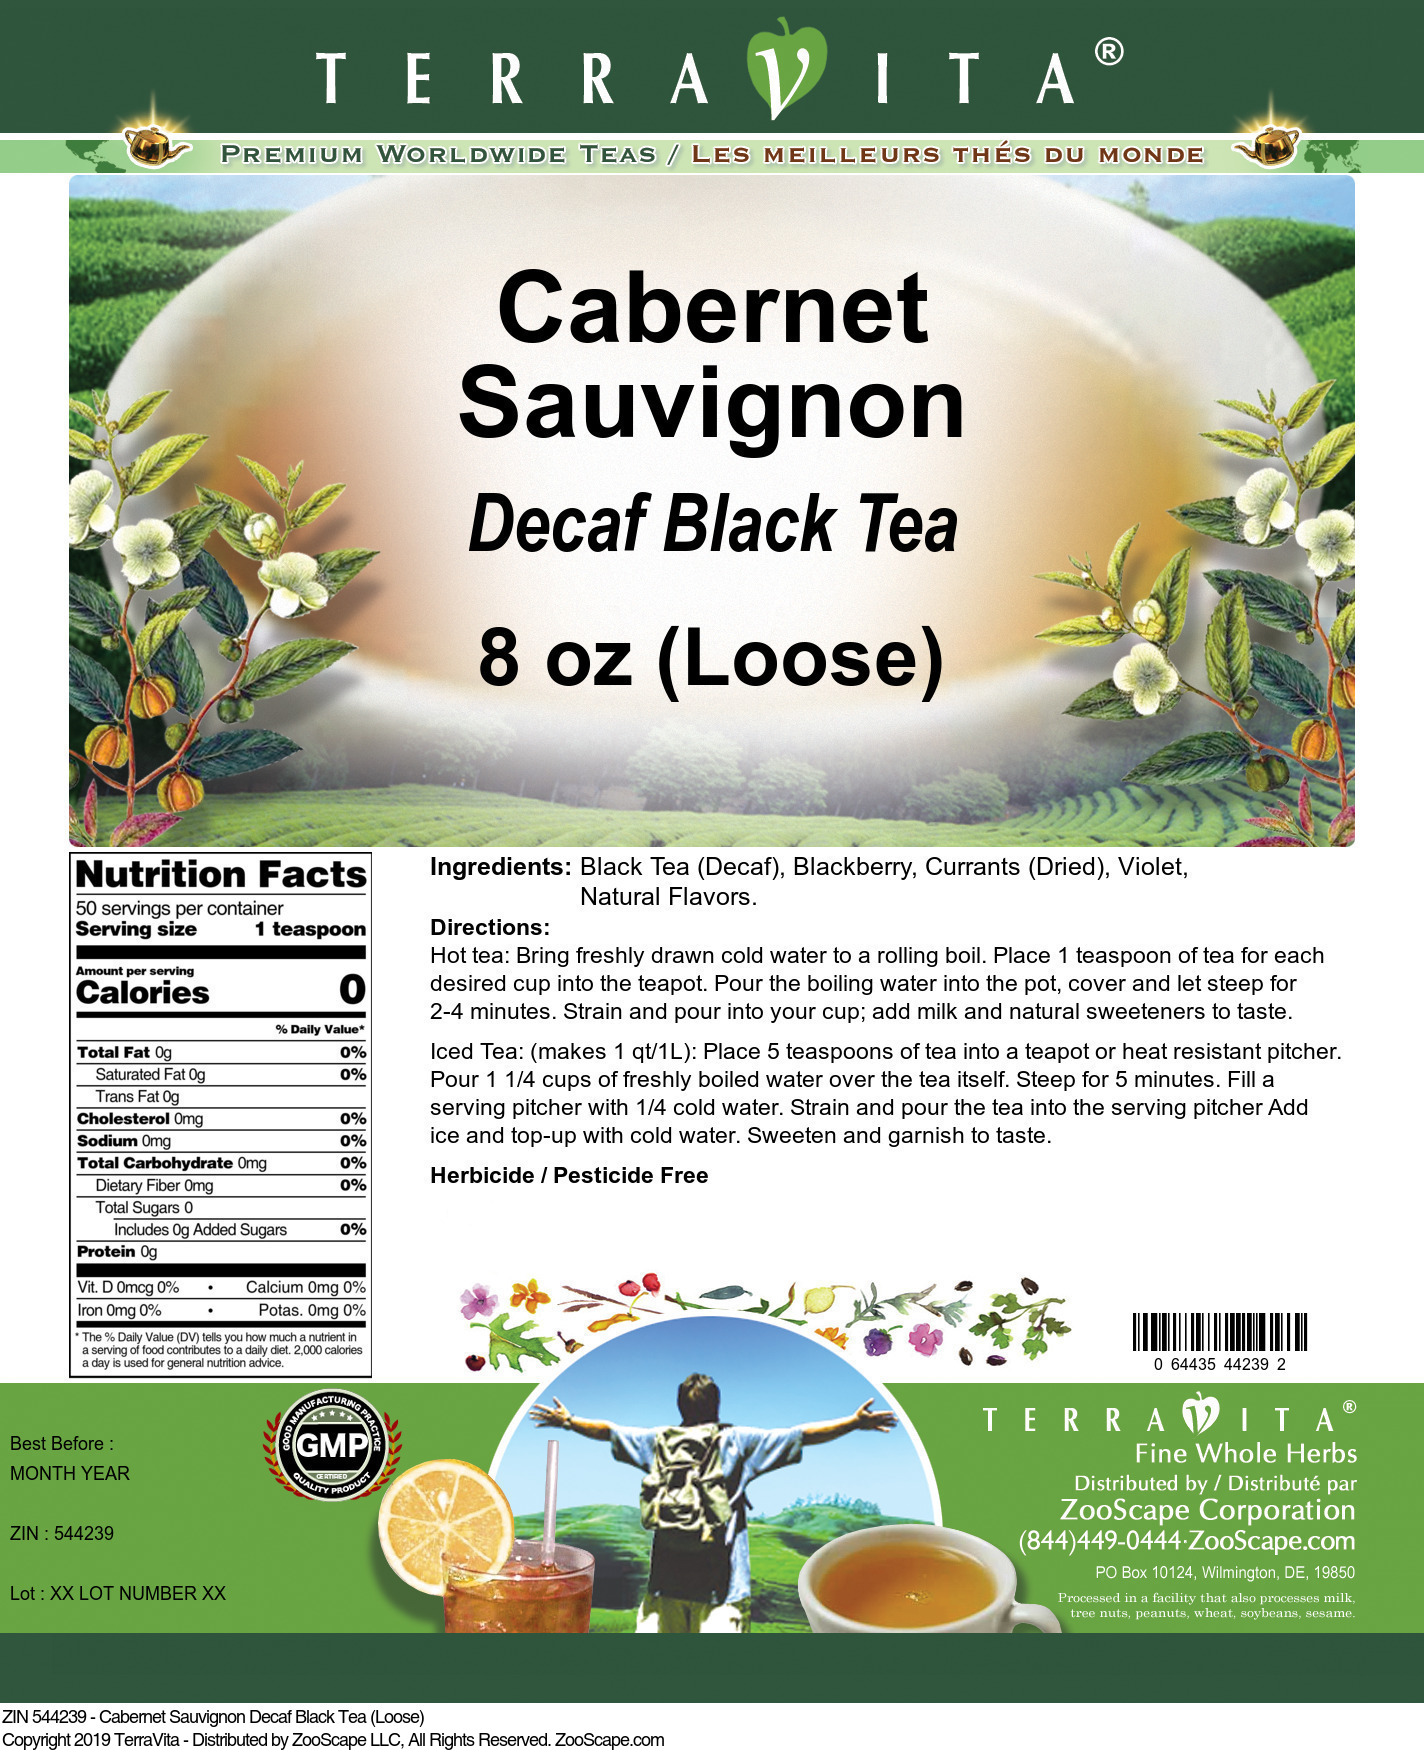 Cabernet Sauvignon Decaf Black Tea (Loose) - Label